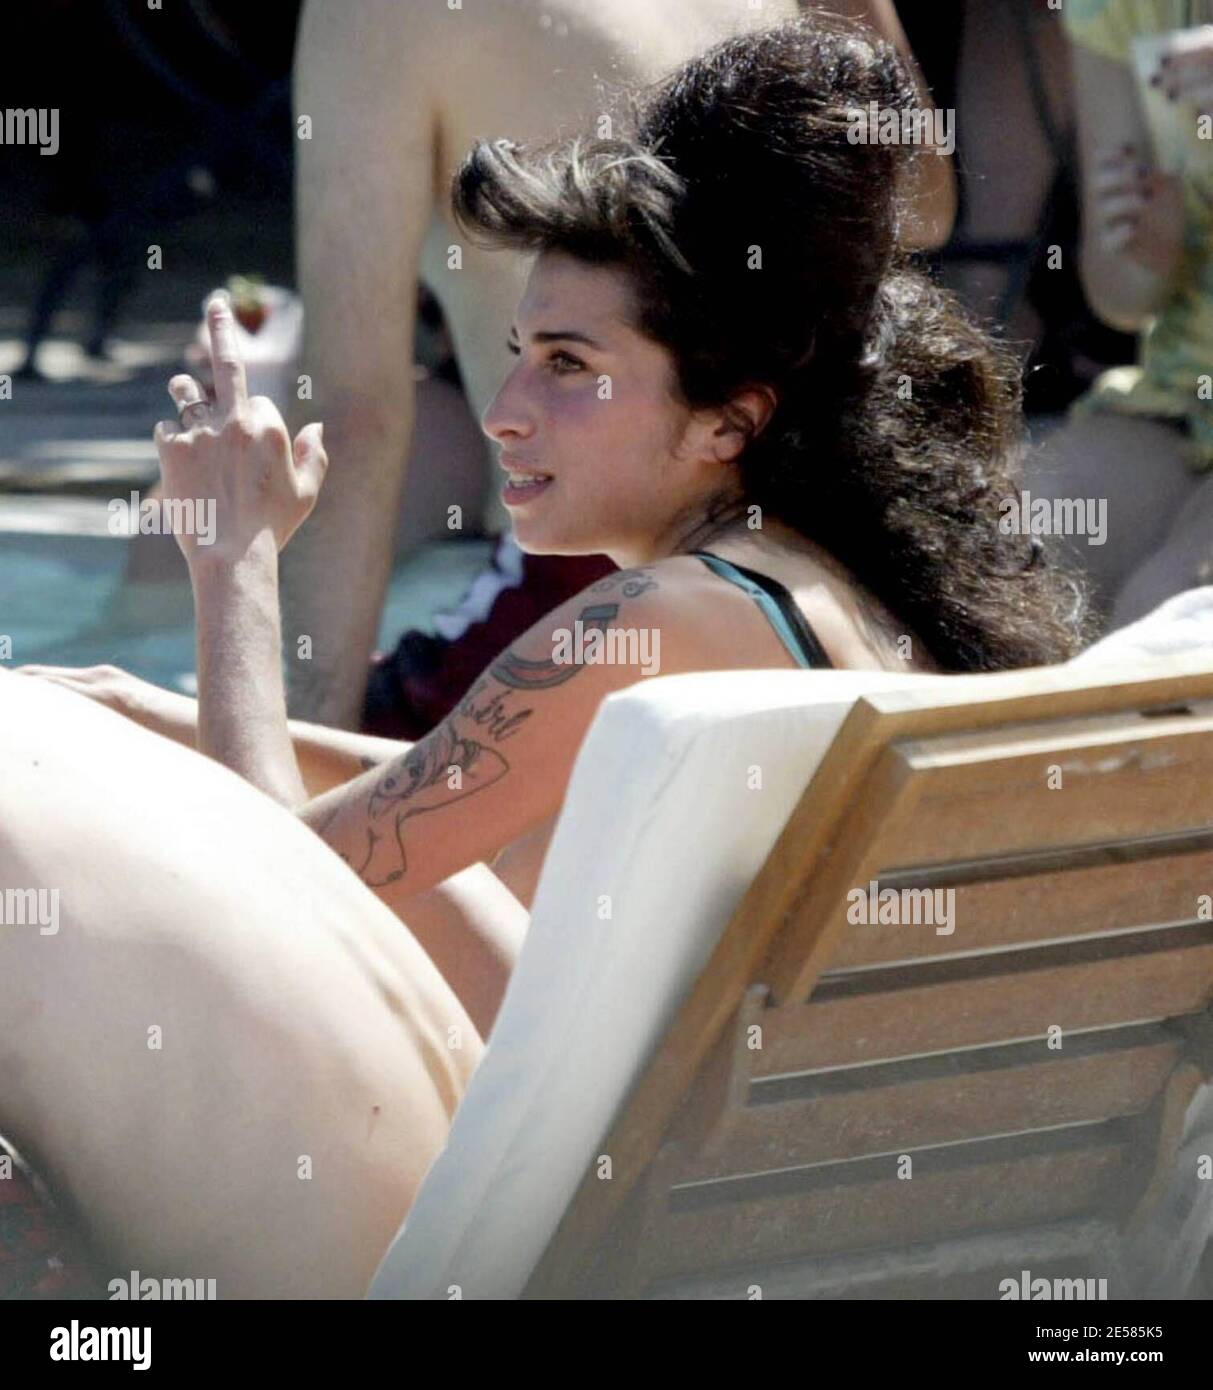 Amy Winehouse, la chanteuse de 'Rehab', a exposé ses tatouages et ses cicatrices dans une paire de shorts et de lys de skimpy top pendant qu'elle se détendit dans la piscine d'un hôtel de Miami Beach, alors qu'elle serait à Miami pour épouser l'amant de longue date Blake fielder-civil dans les prochains jours. Miami, Floride 5/17/07. [[mab]] Banque D'Images